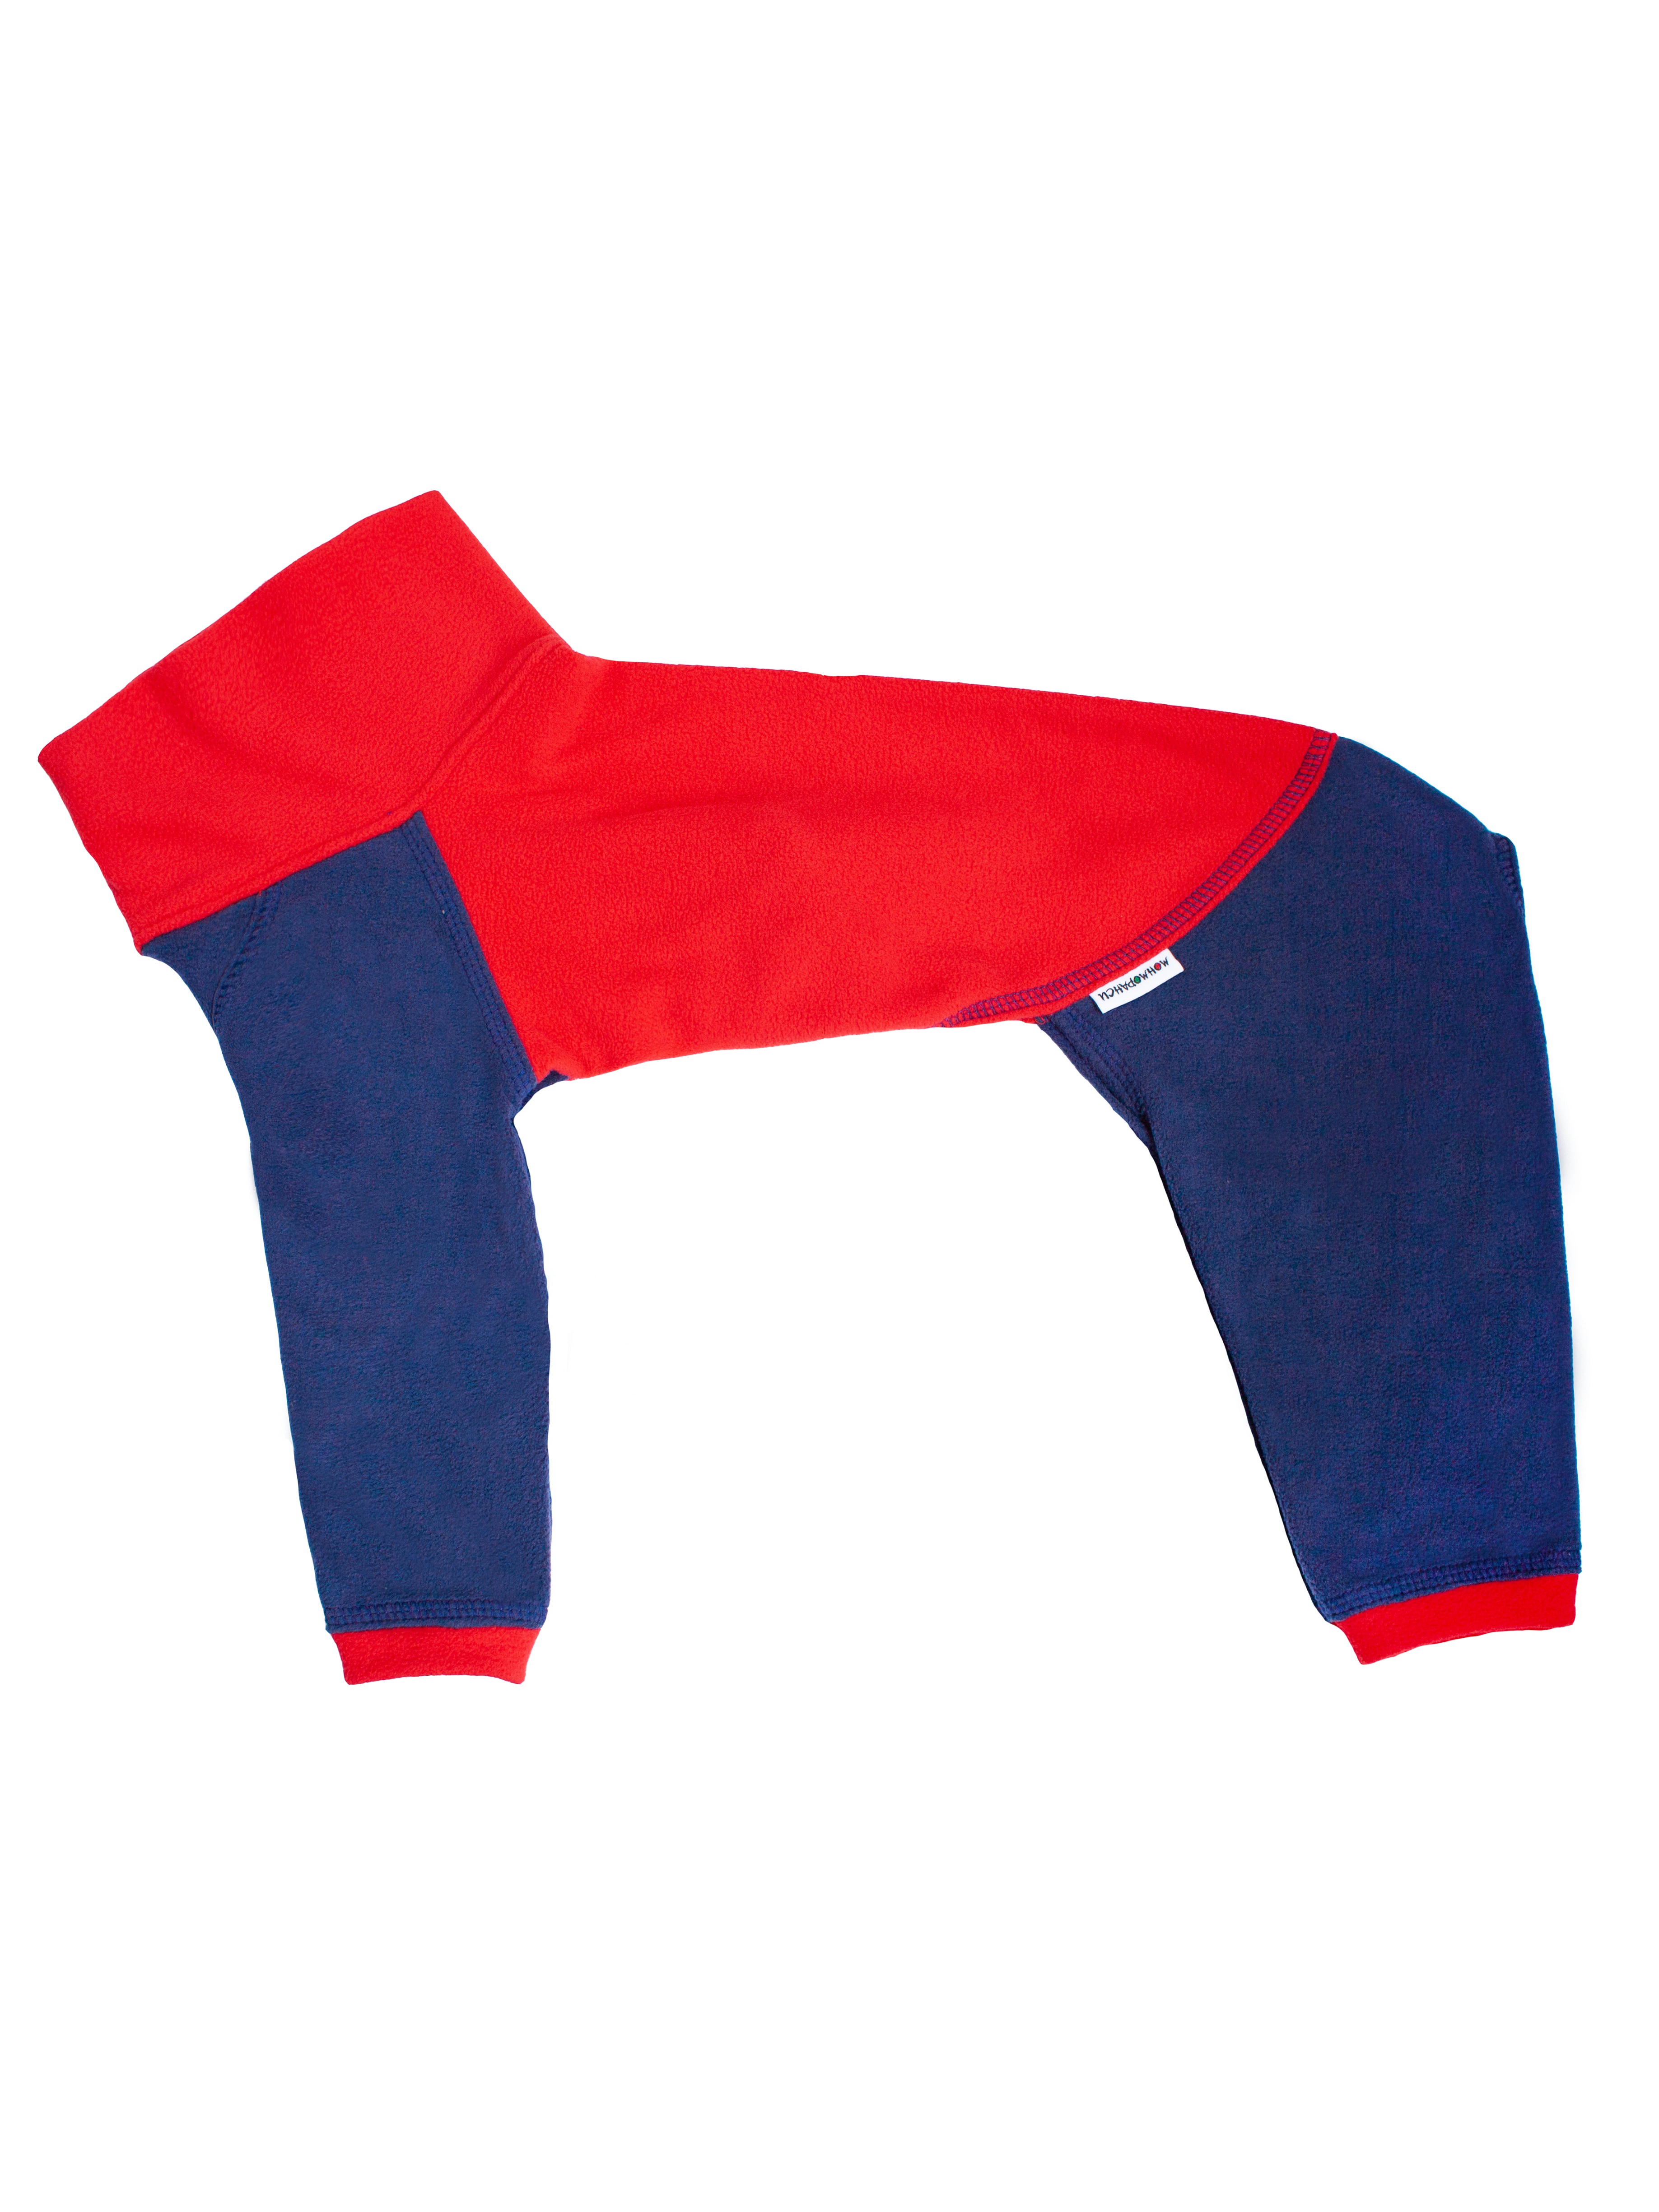 Флисовый комбинезон для собак, цвет красно-синий, размер М1